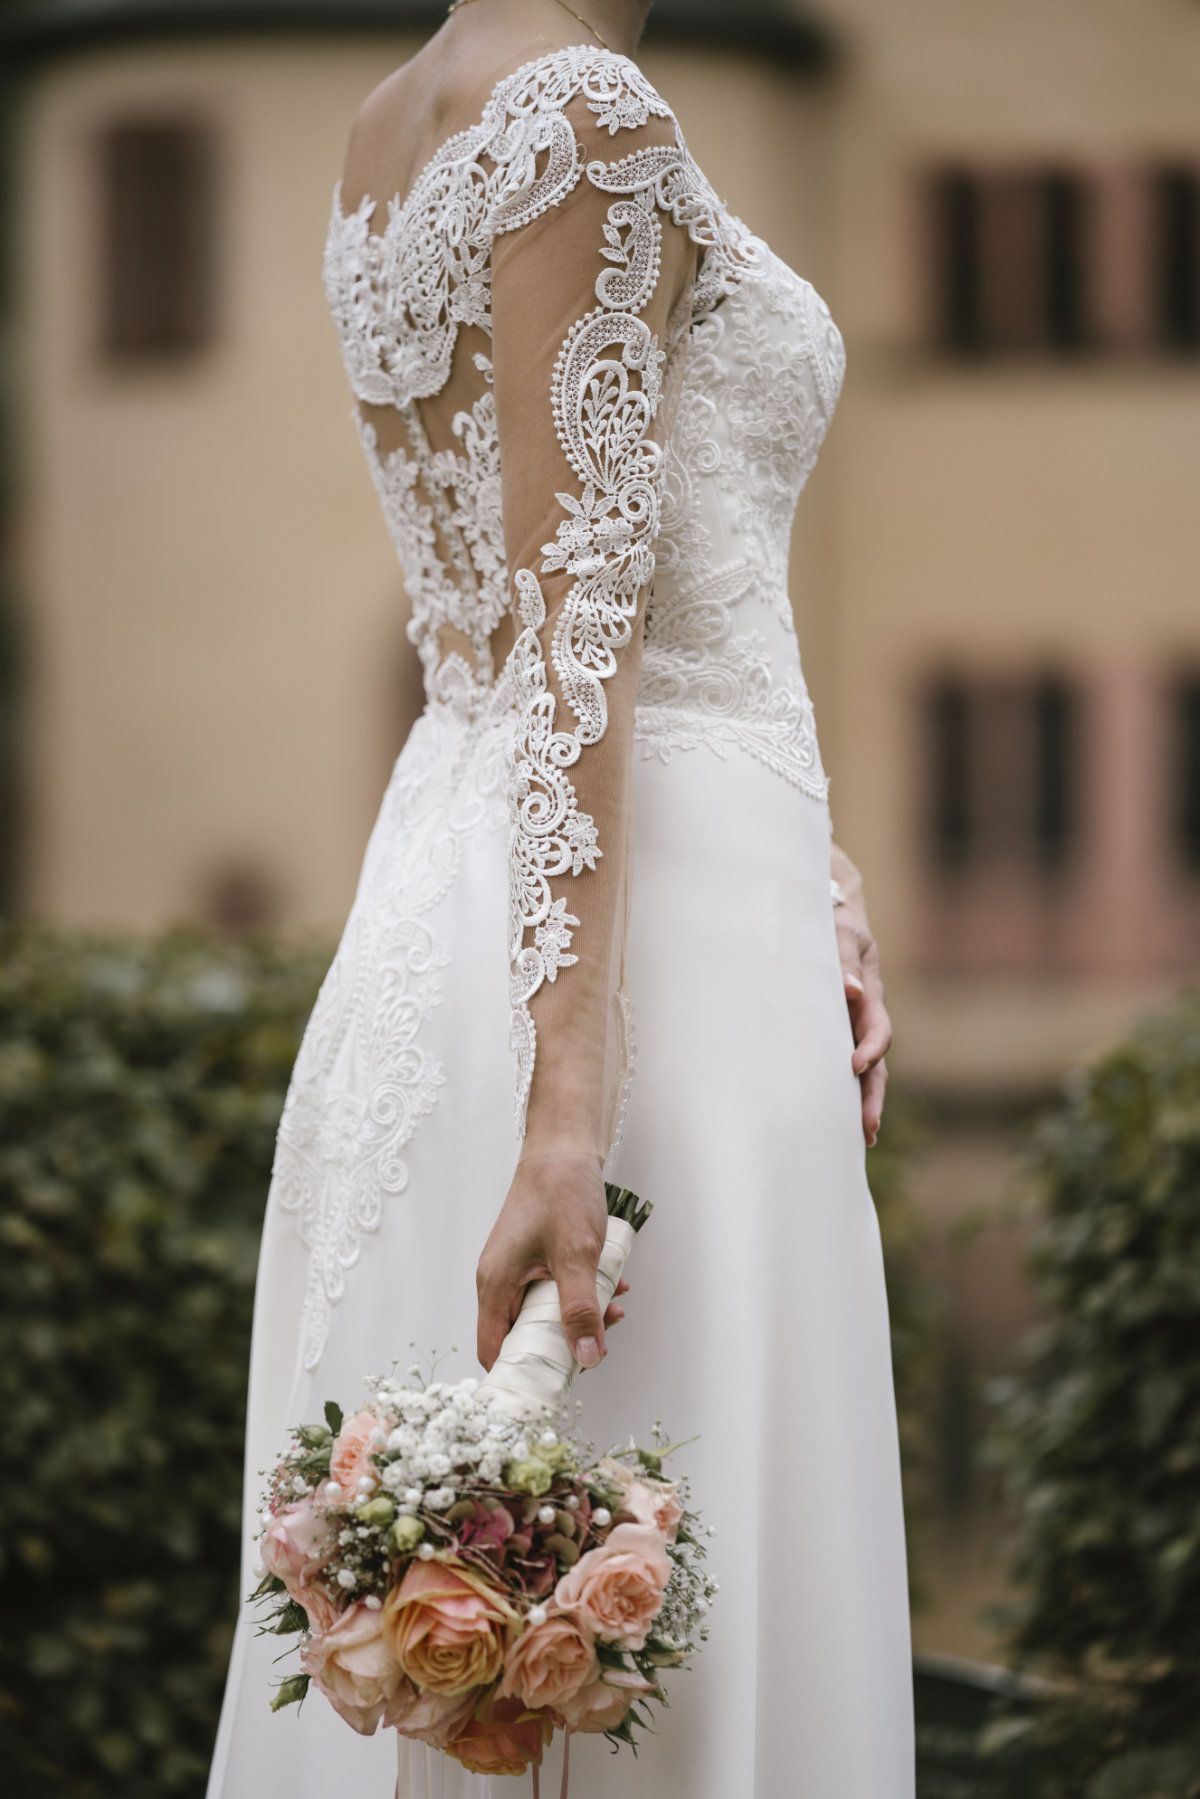 Brautstrauß mit dem Brautkleid im Hintergrund